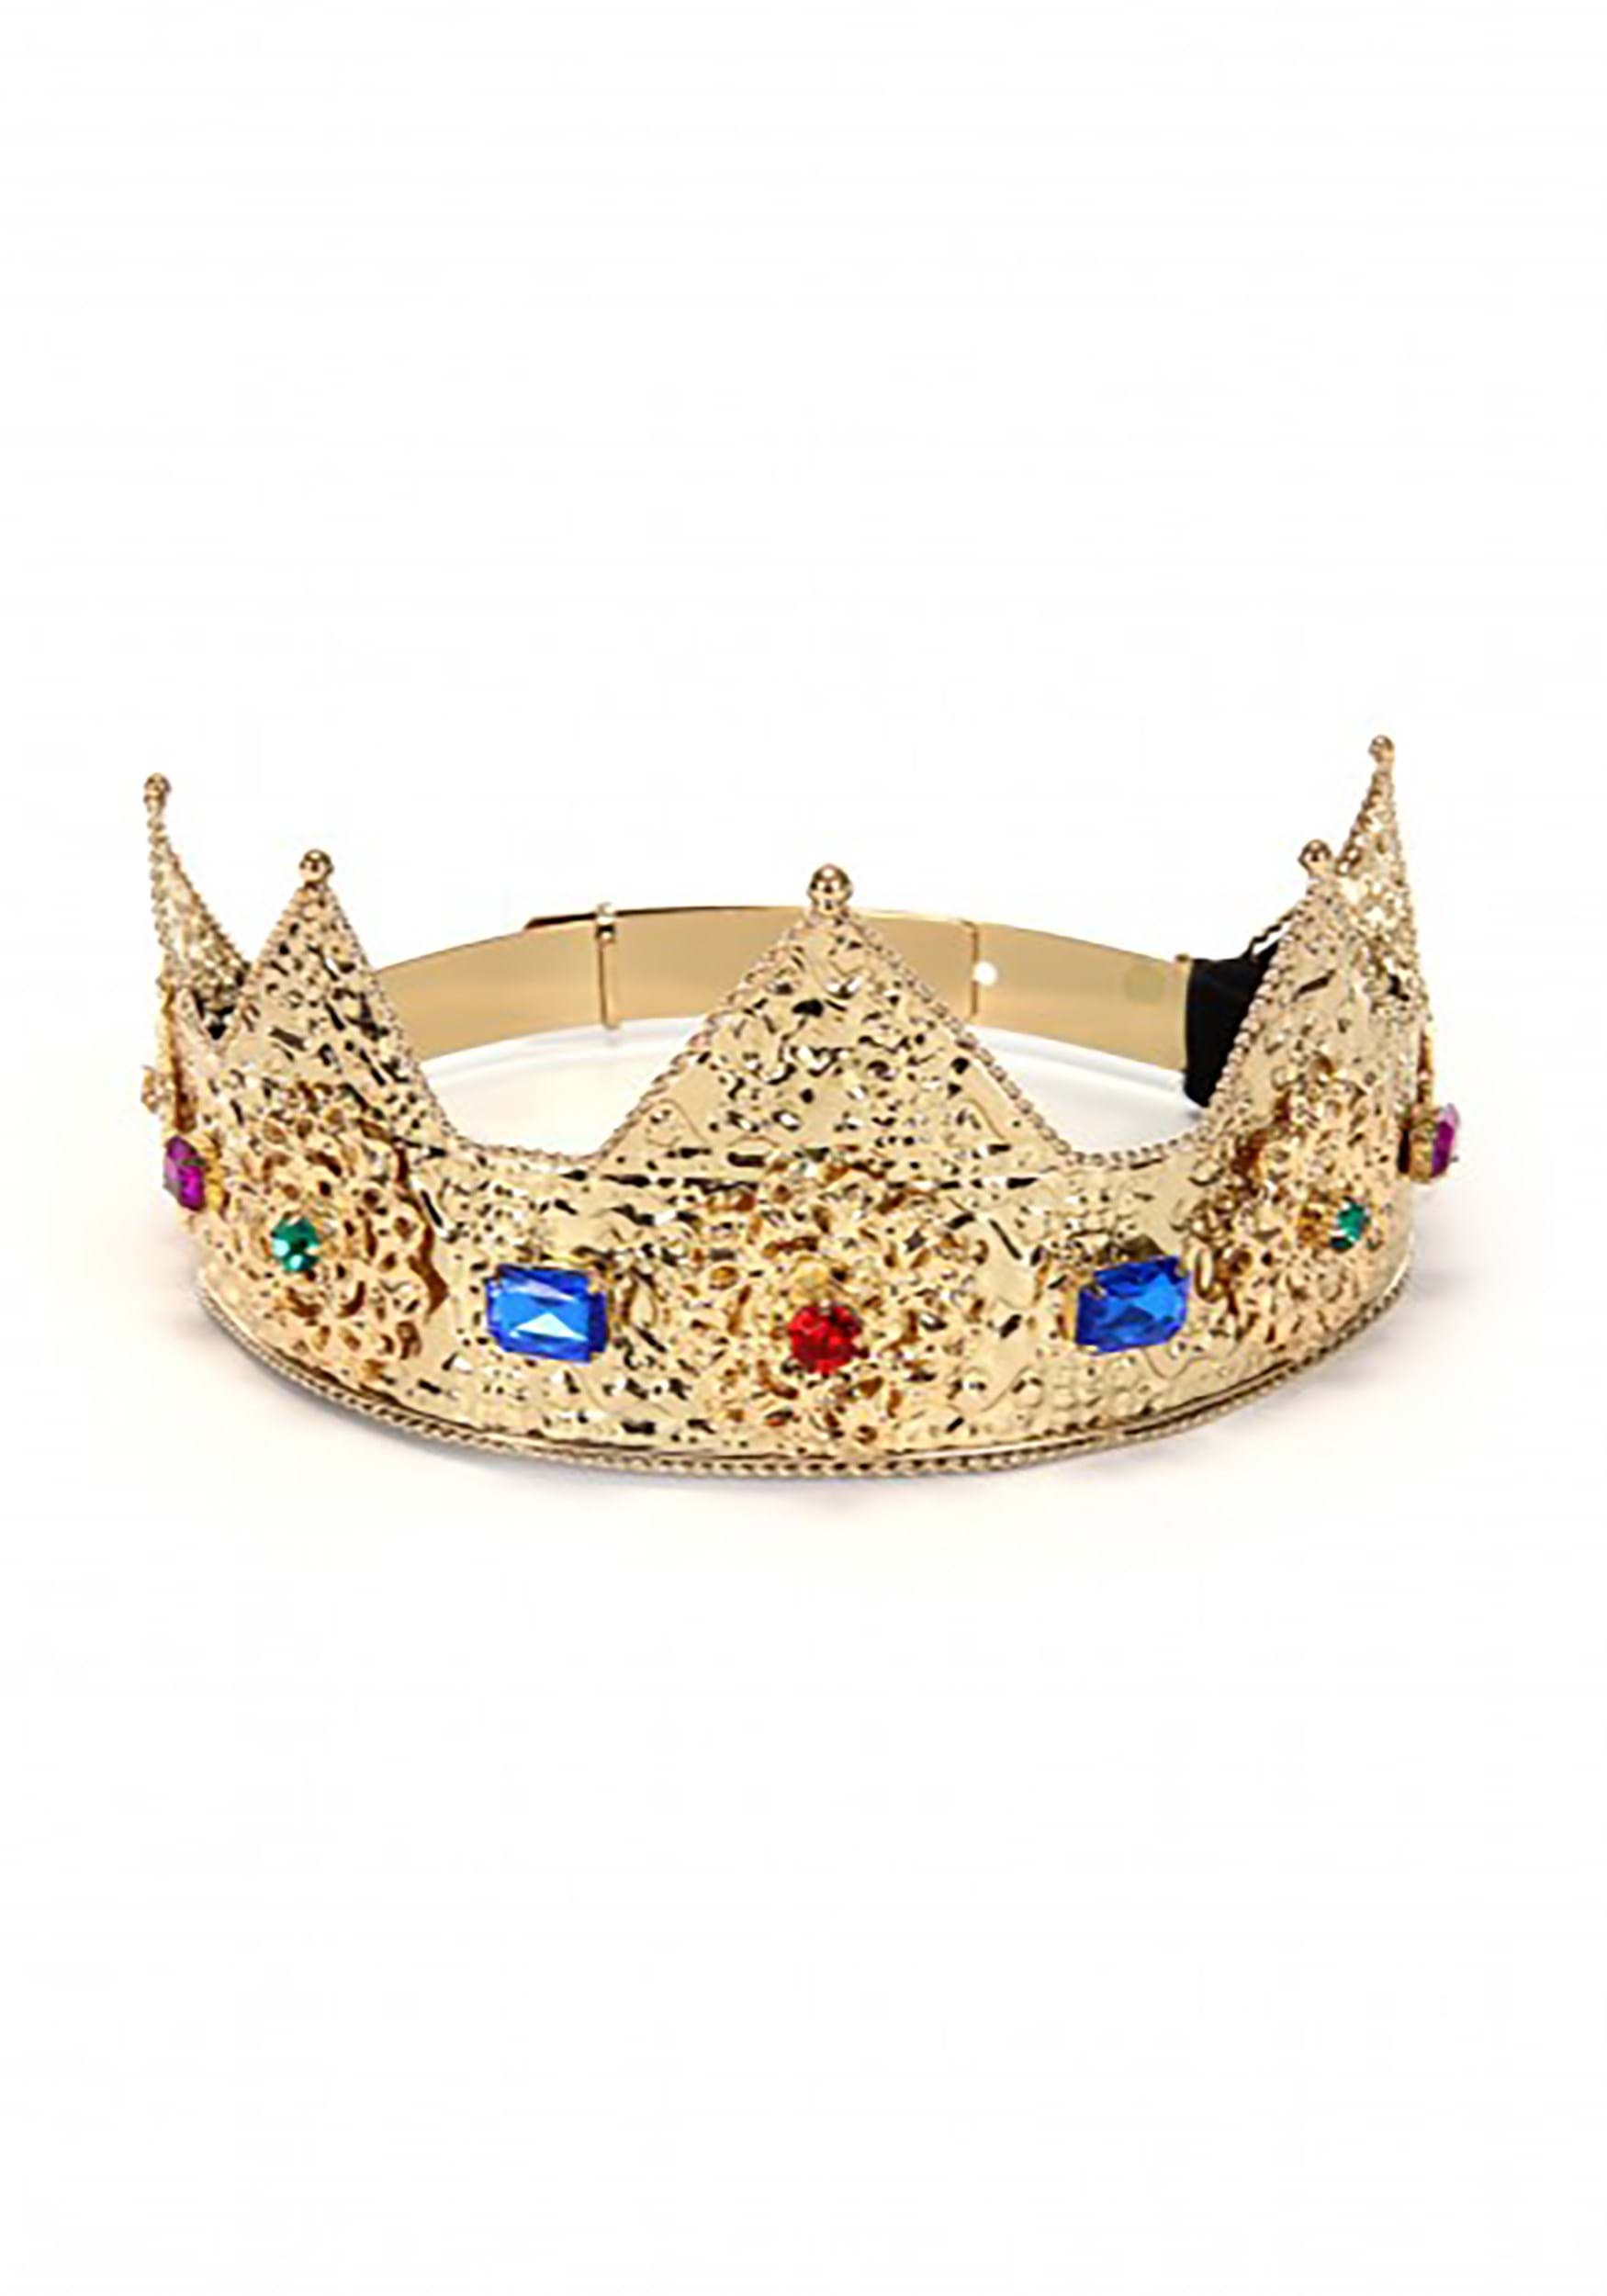 Gold & Gems Ladies Pointed Crown Adjustable 3